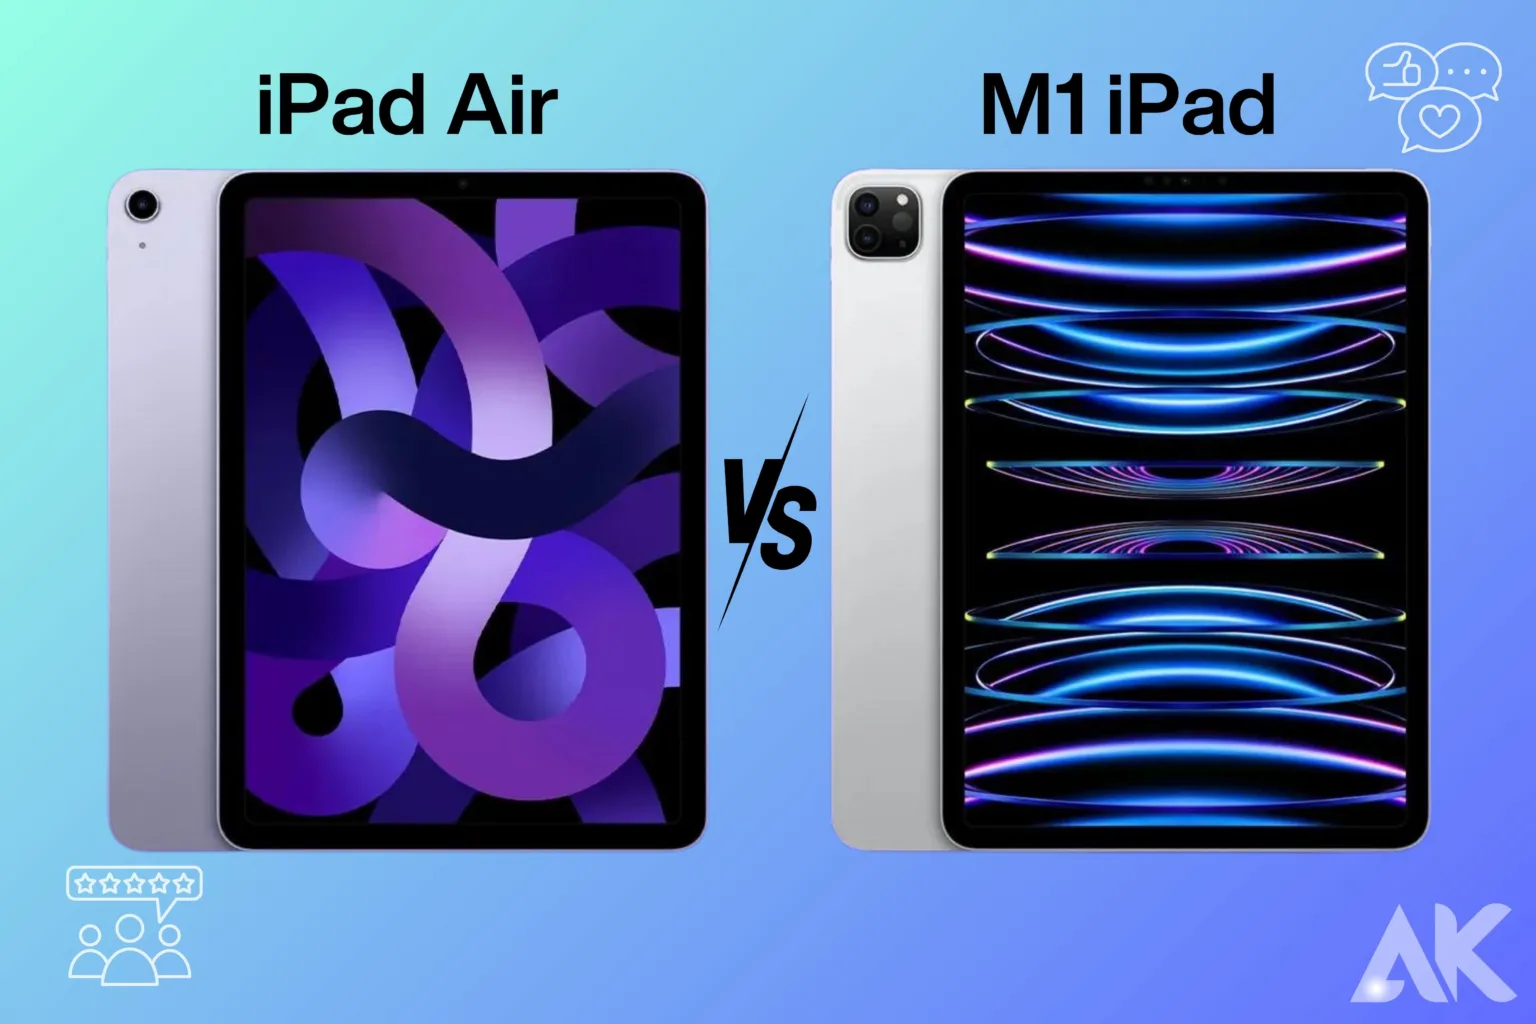 iPad Air vs M1 iPad review